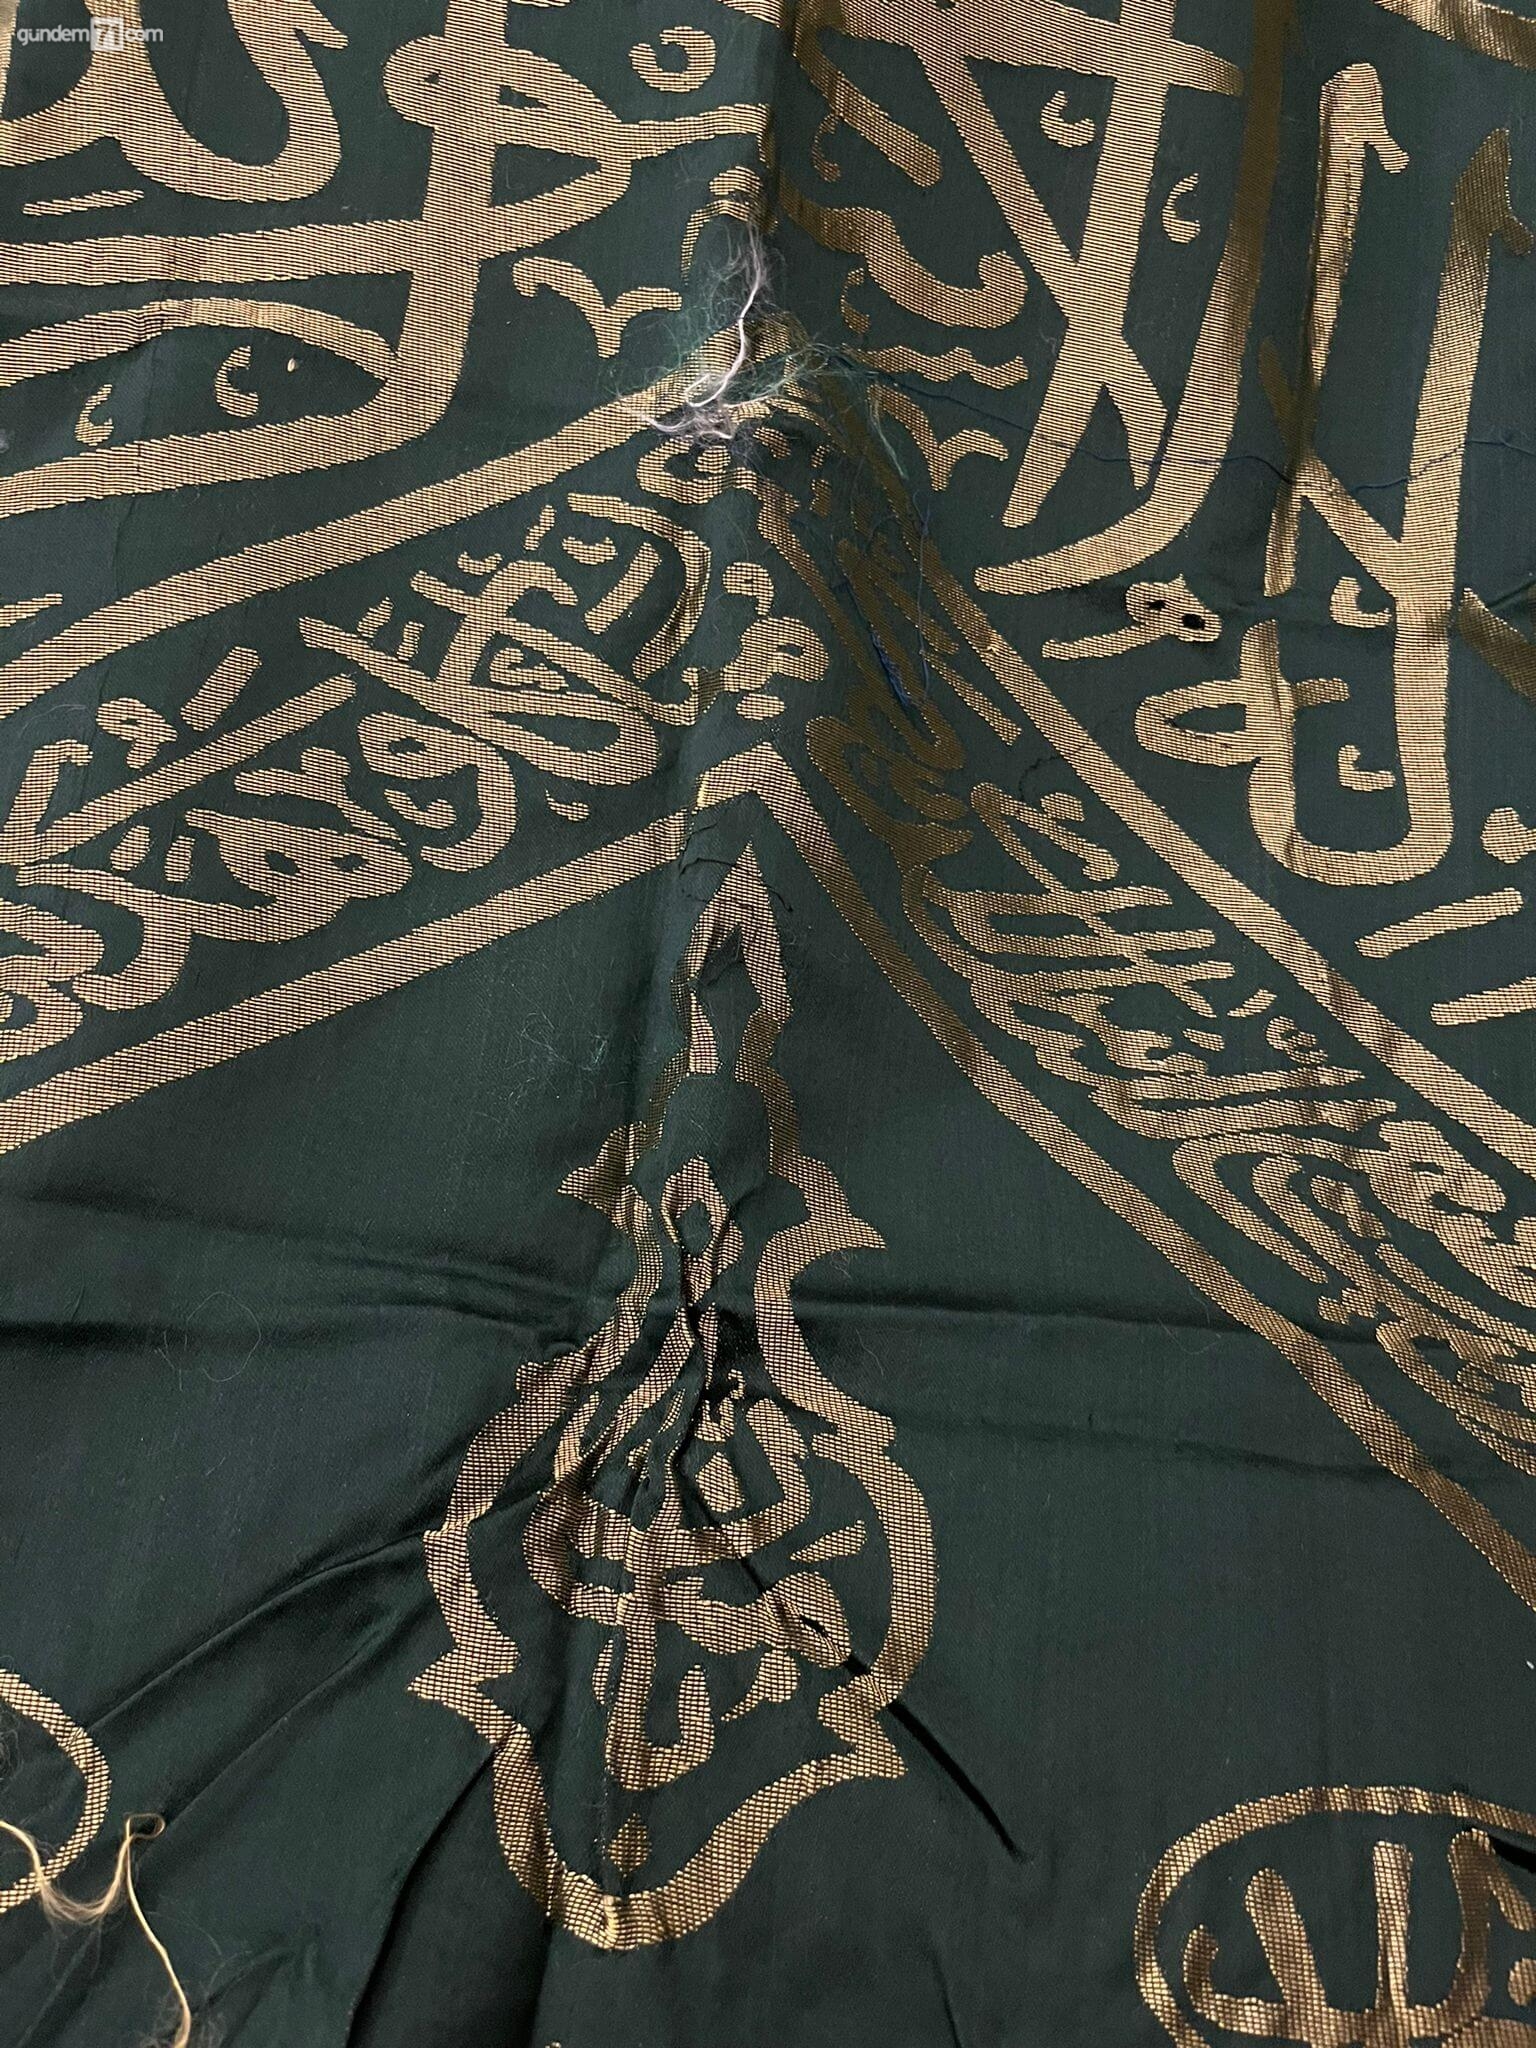 kabe-ortuleri-kirikkalede-islami-degerler-kulliyesinde-sergilenecek-3 Kabe Örtüleri Kırıkkale'de İslami Değerler Külliyesi'nde Sergilenecek